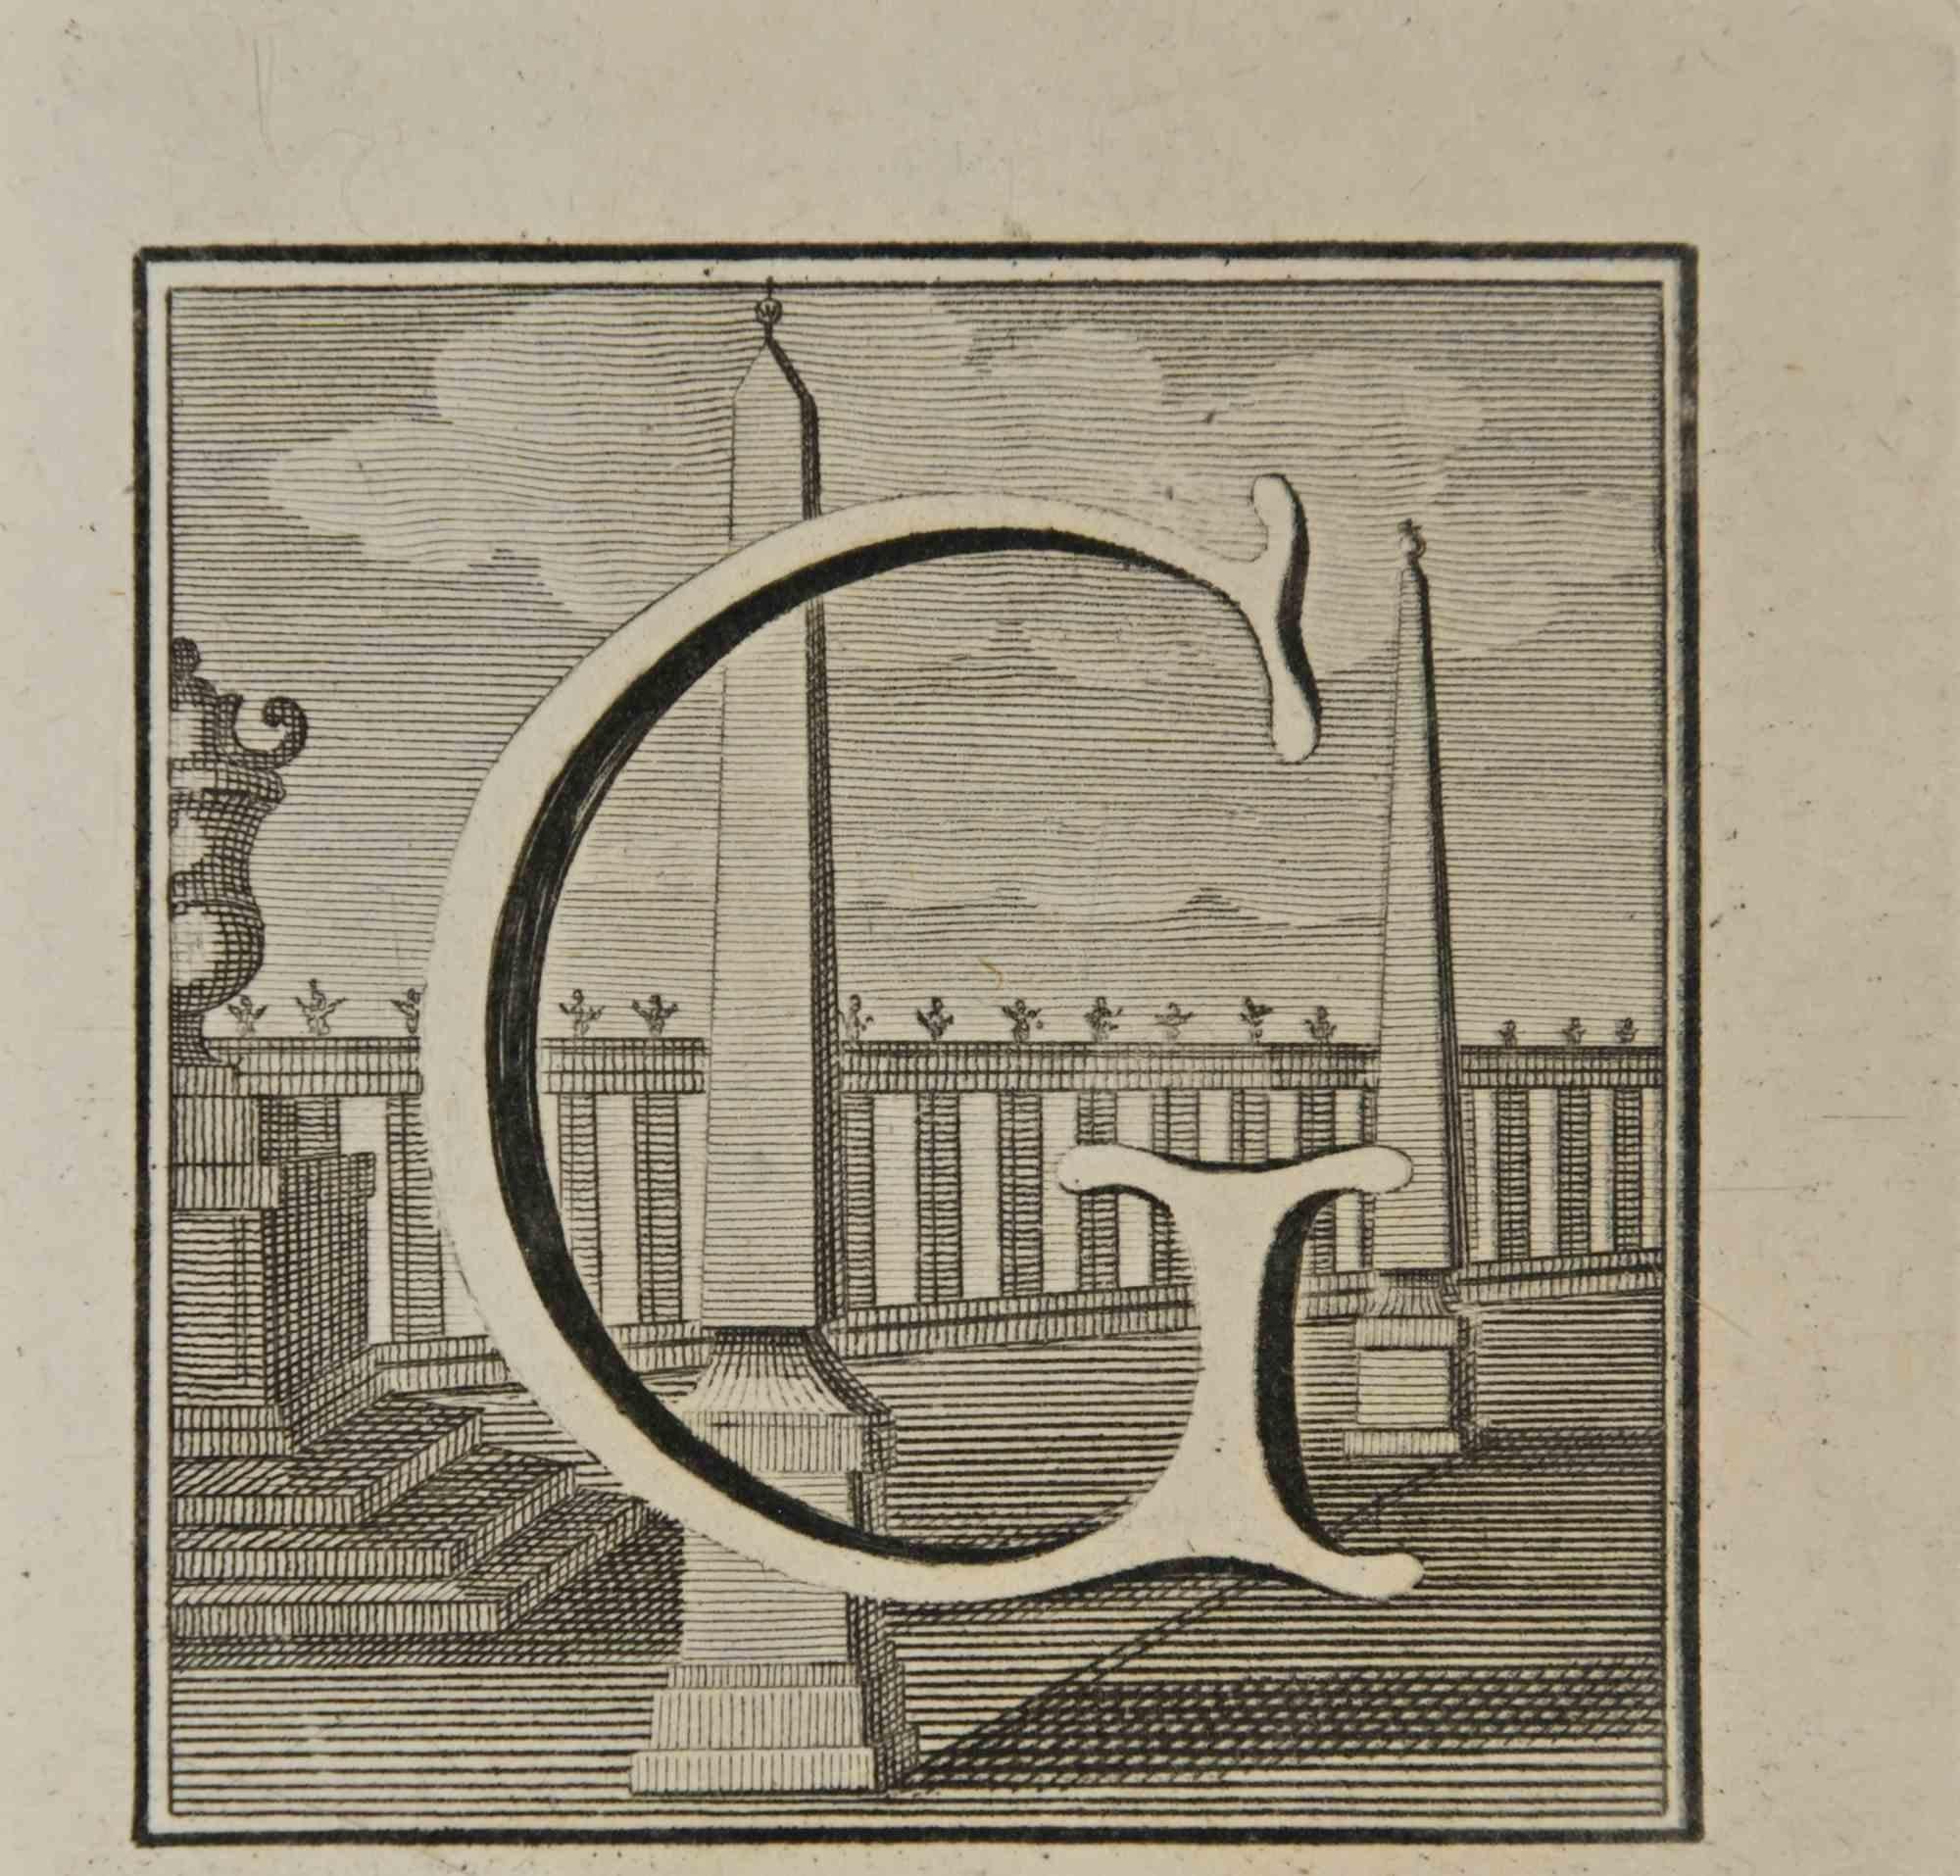 Lettre de l'alphabet G,  de la série "Antiquités d'Herculanum", est une gravure sur papier réalisée par Luigi Vanvitelli au 18ème siècle.

Bonnes conditions.

La gravure appartient à la suite d'estampes "Antiquités d'Herculanum exposées" (titre